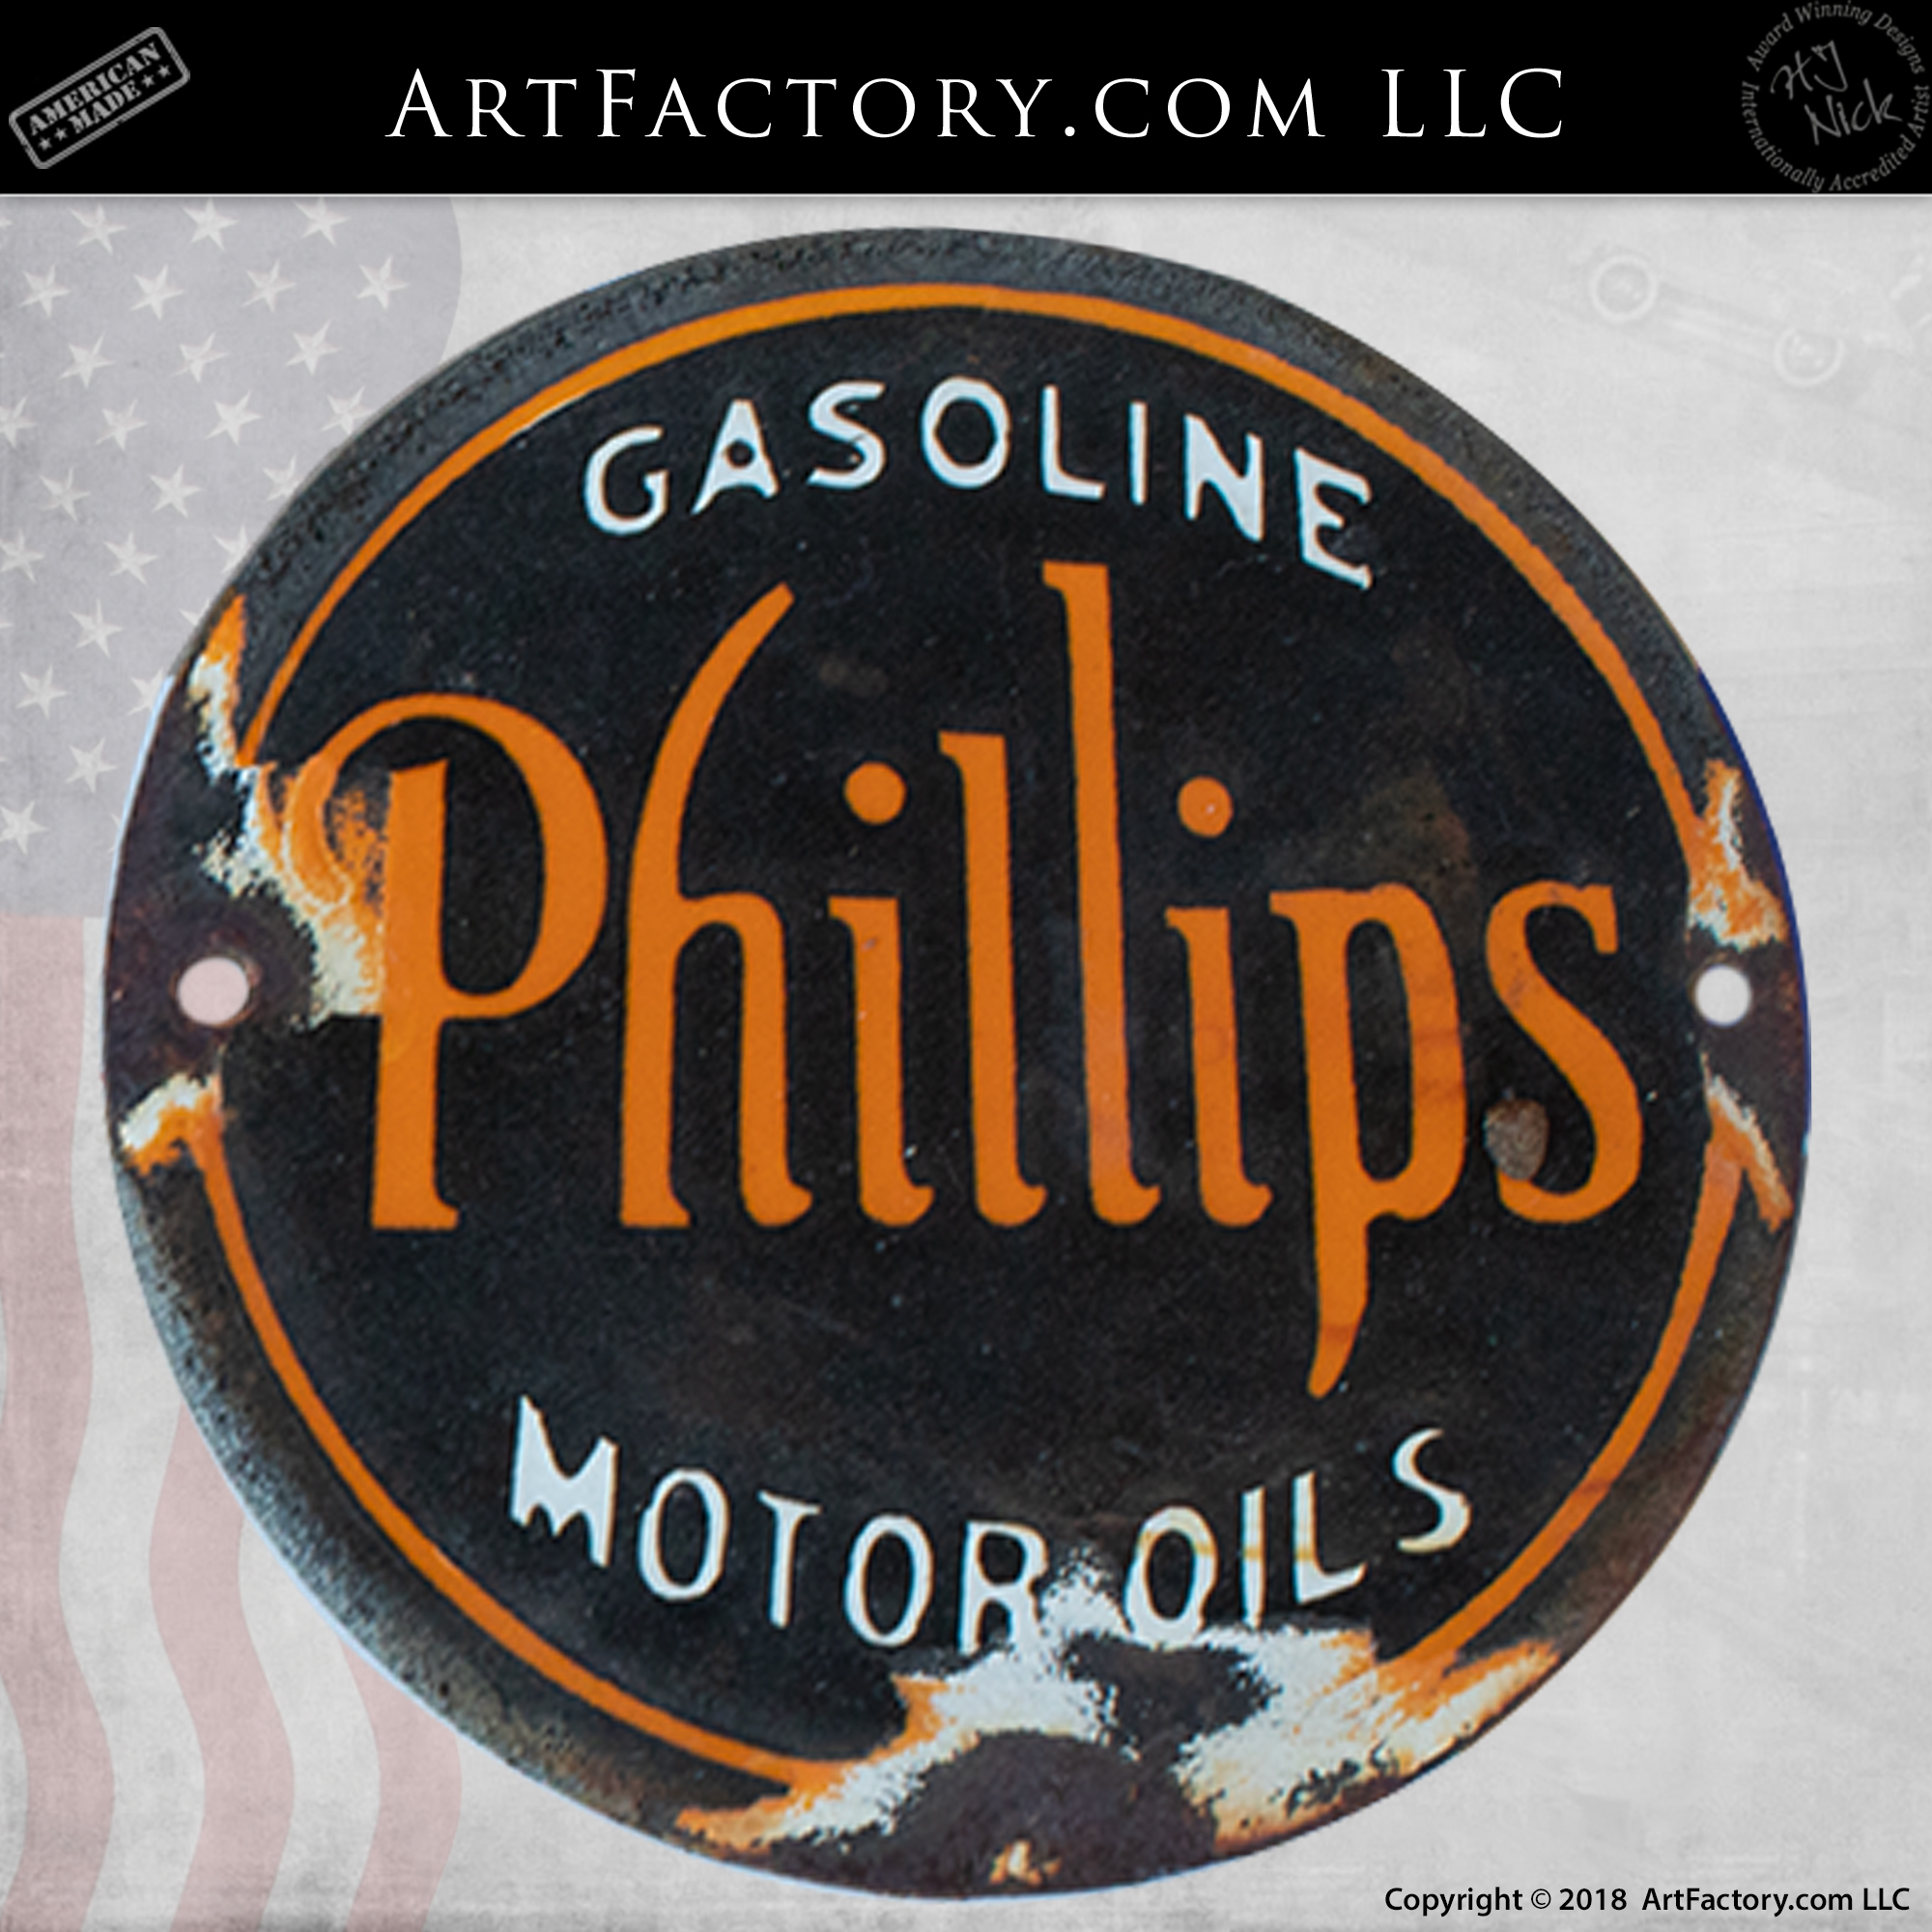 Phillips Motor Oil